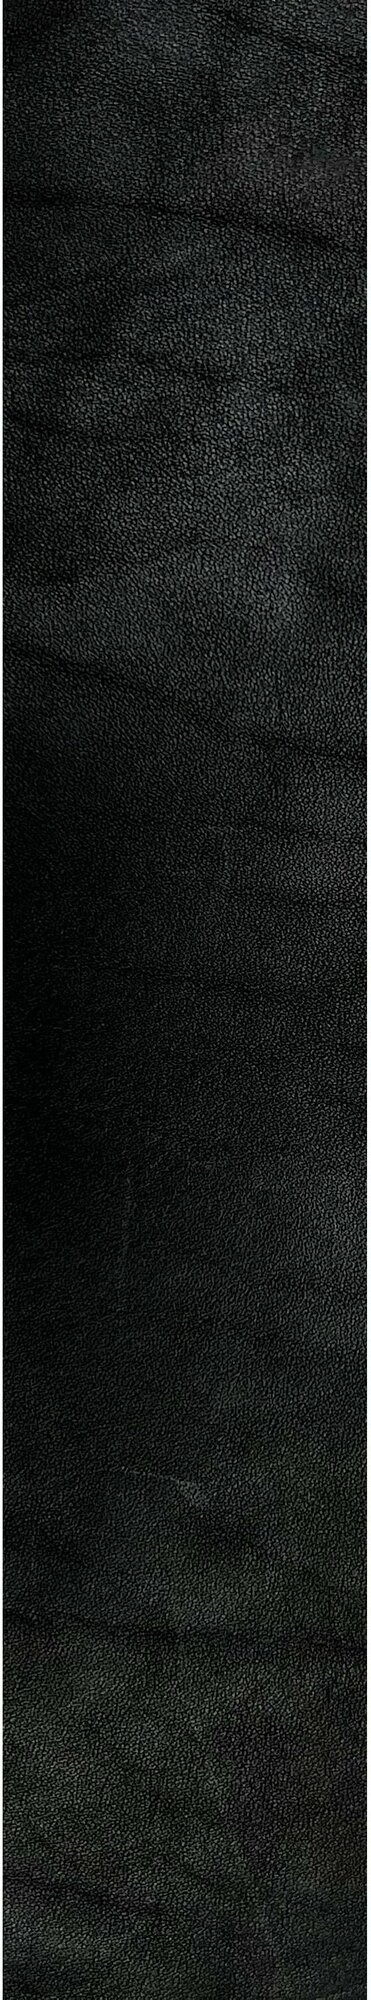 Ременная заготовка, черный цвет, натуральная кожа, толщина 3,0-3,5мм, ширина 40мм, длина 120-150см